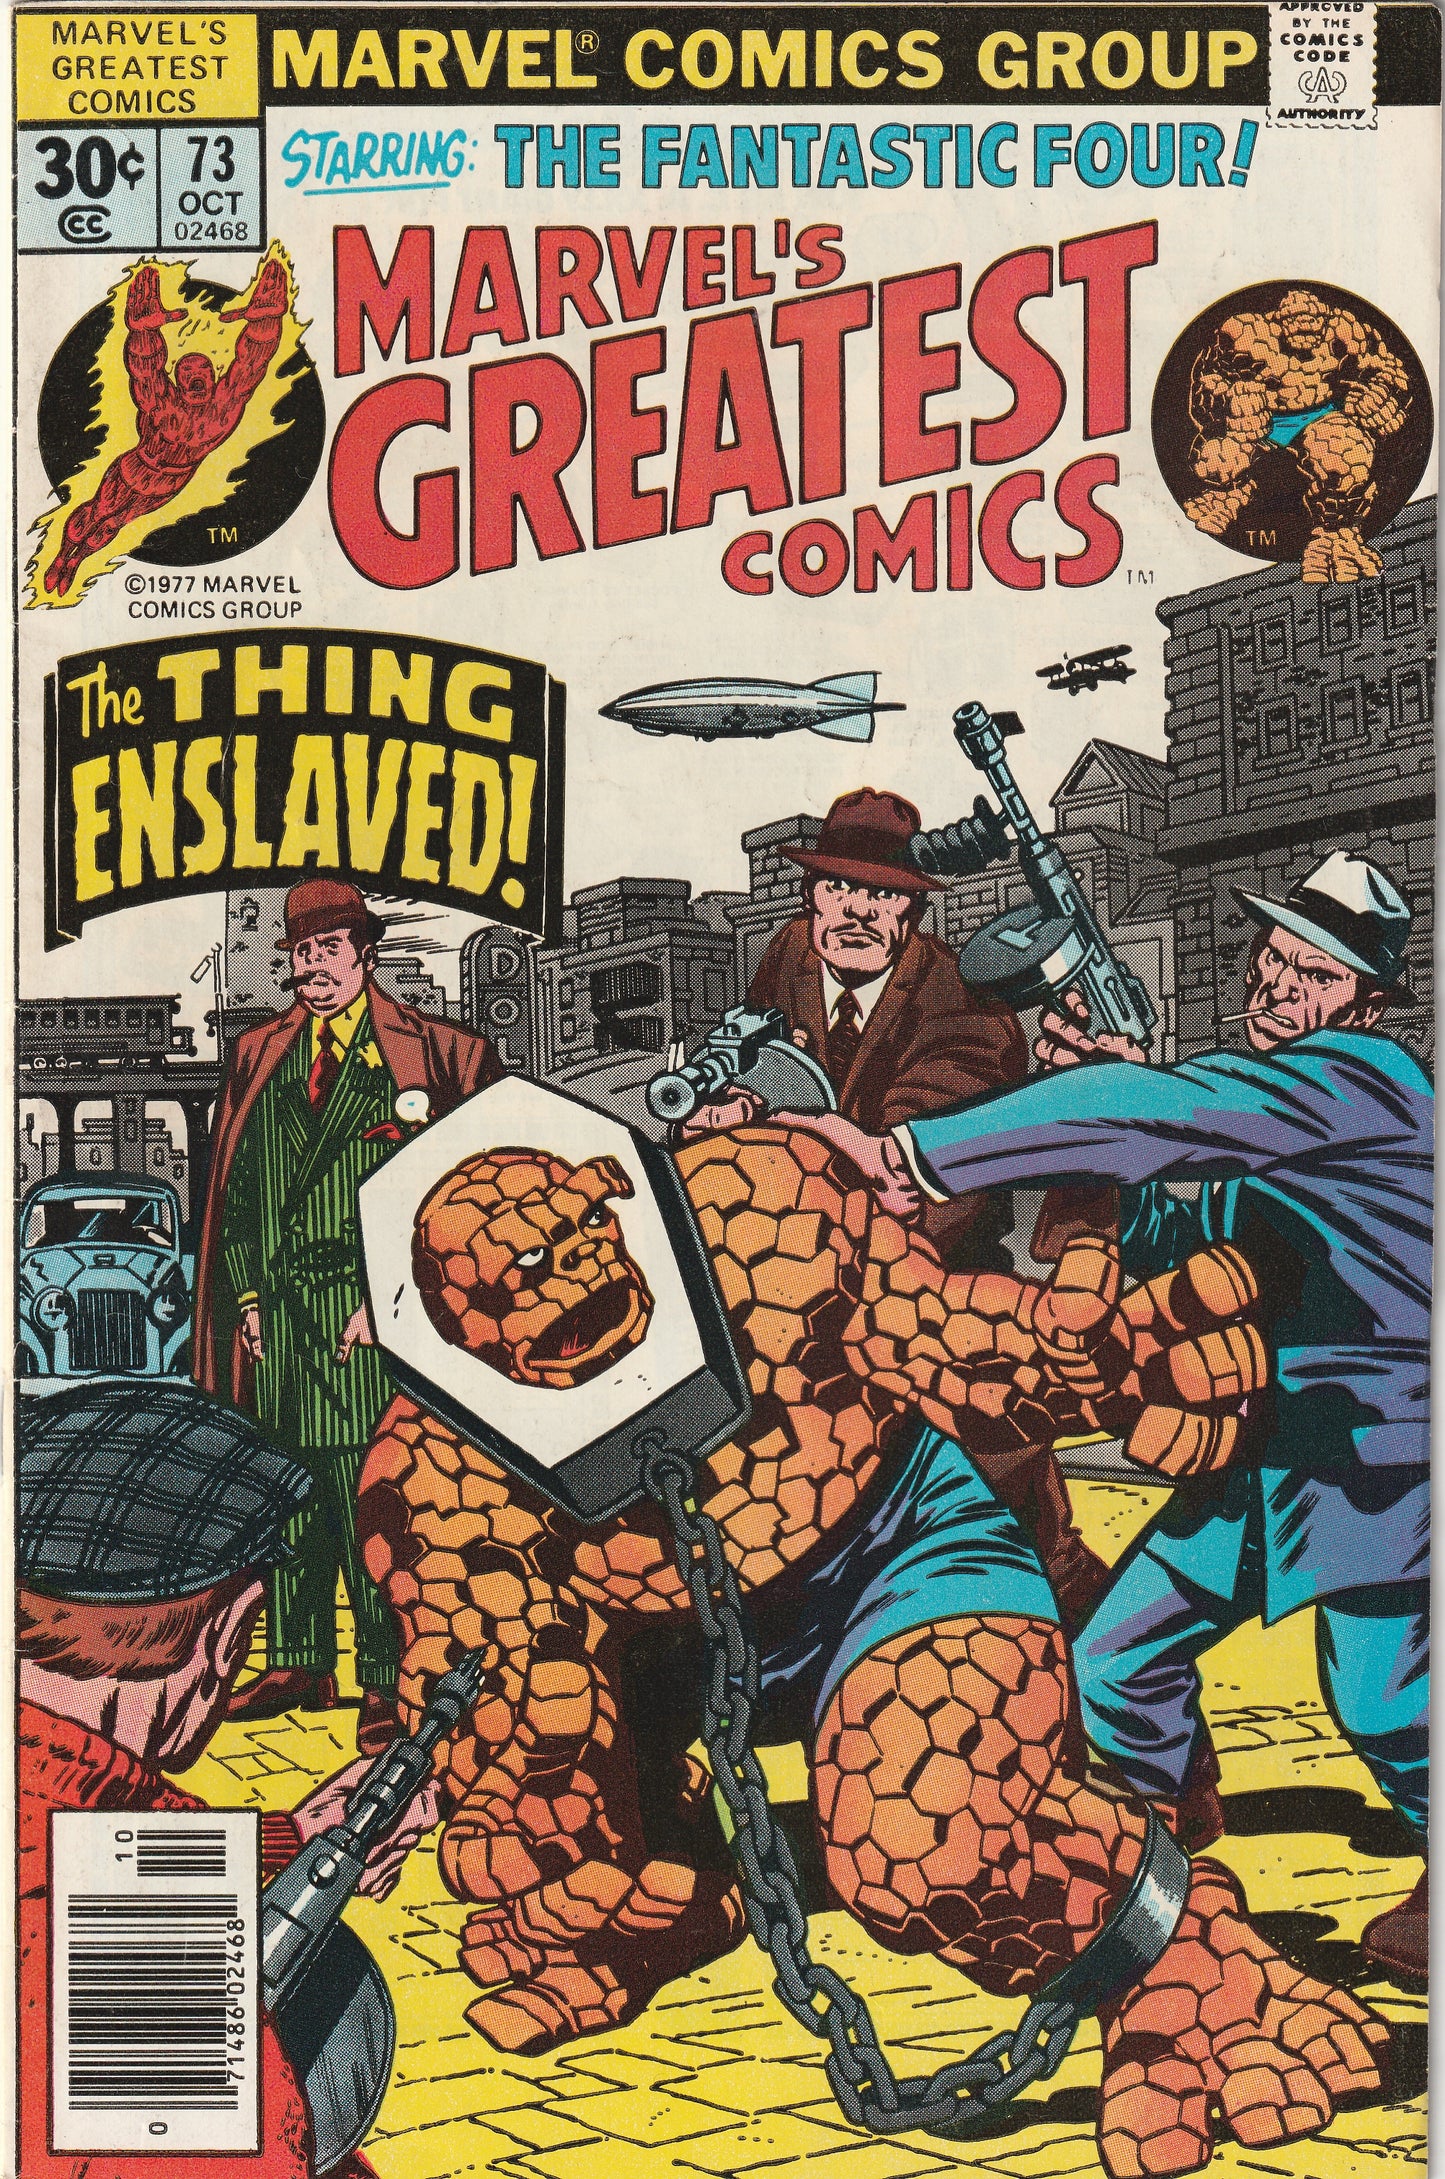 Marvel's Greatest Comics #73 (1977) - Skrulls